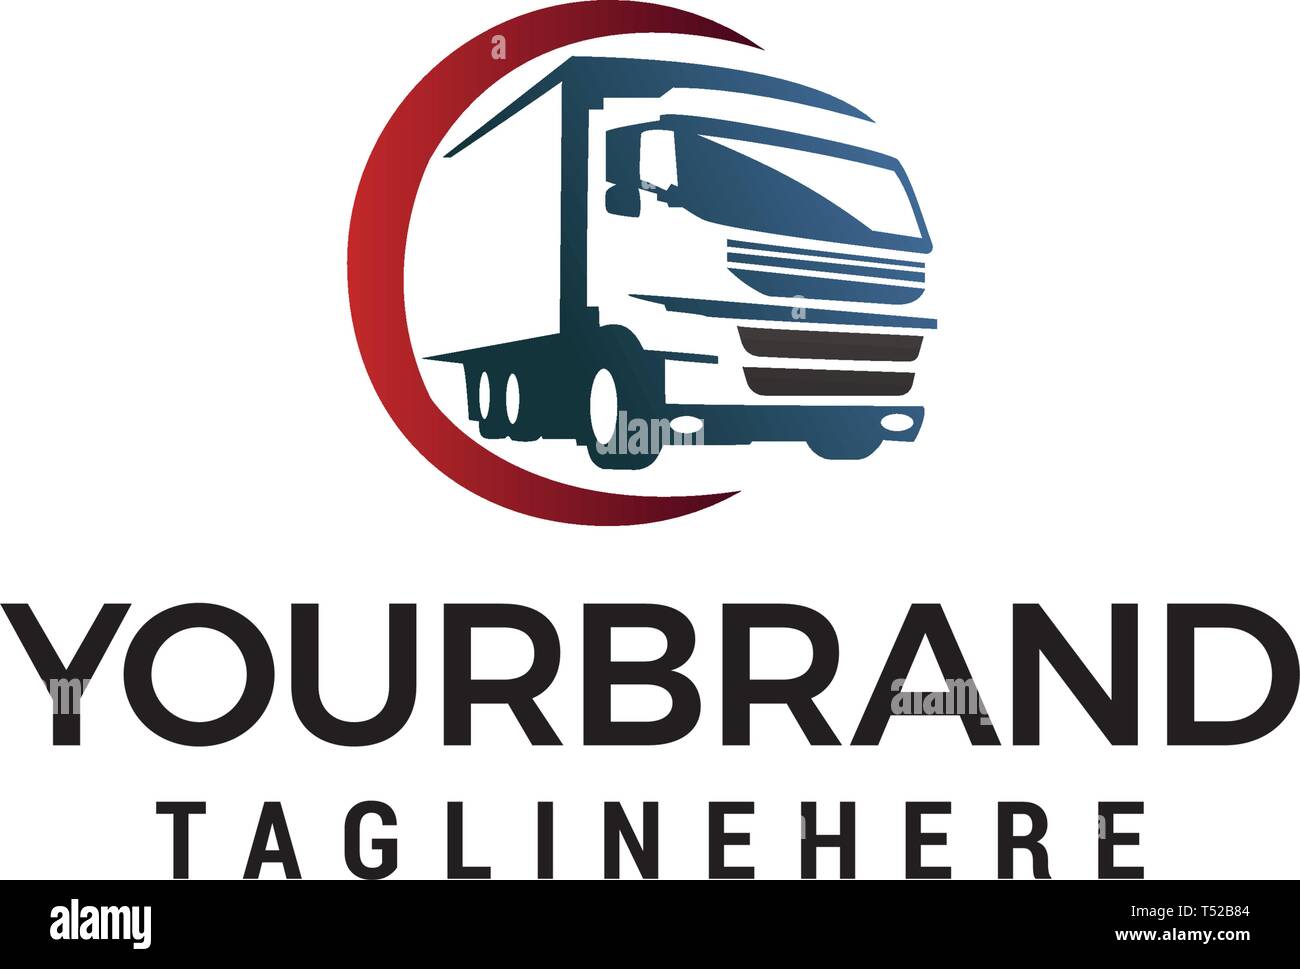 transport logo design